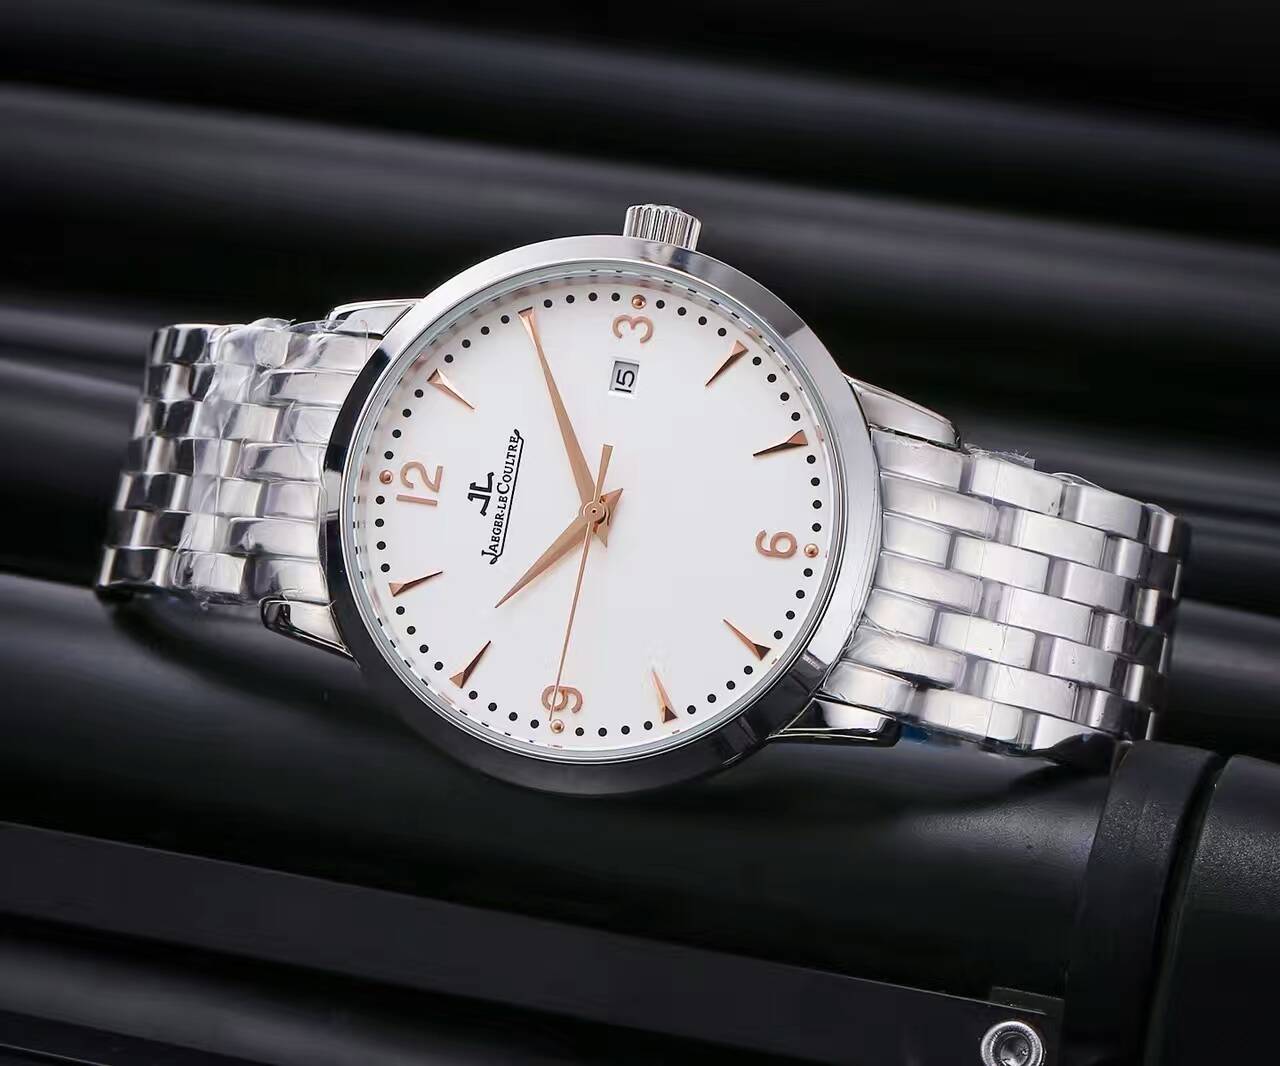 積家 原裝西鐵城機械機芯 礦物質超強鏡面 精鋼錶帶 直徑41mm 厚12mm 精品男士腕錶 